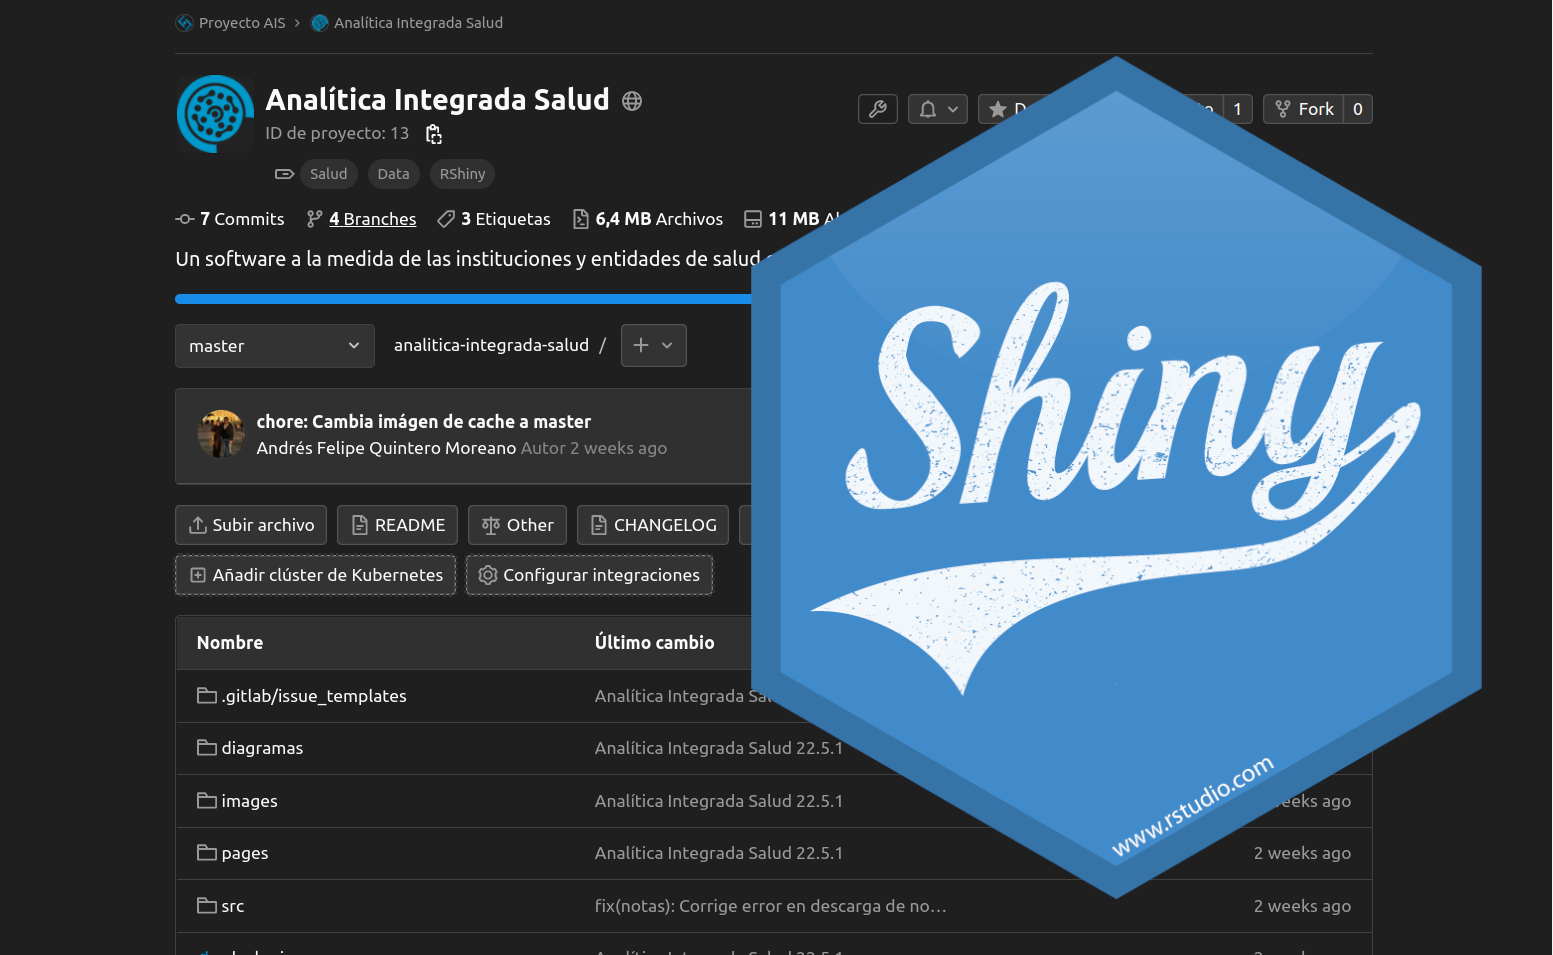 Analítica Integrada Salud, una herramienta de aprendizaje para desarrolladores R/Shiny